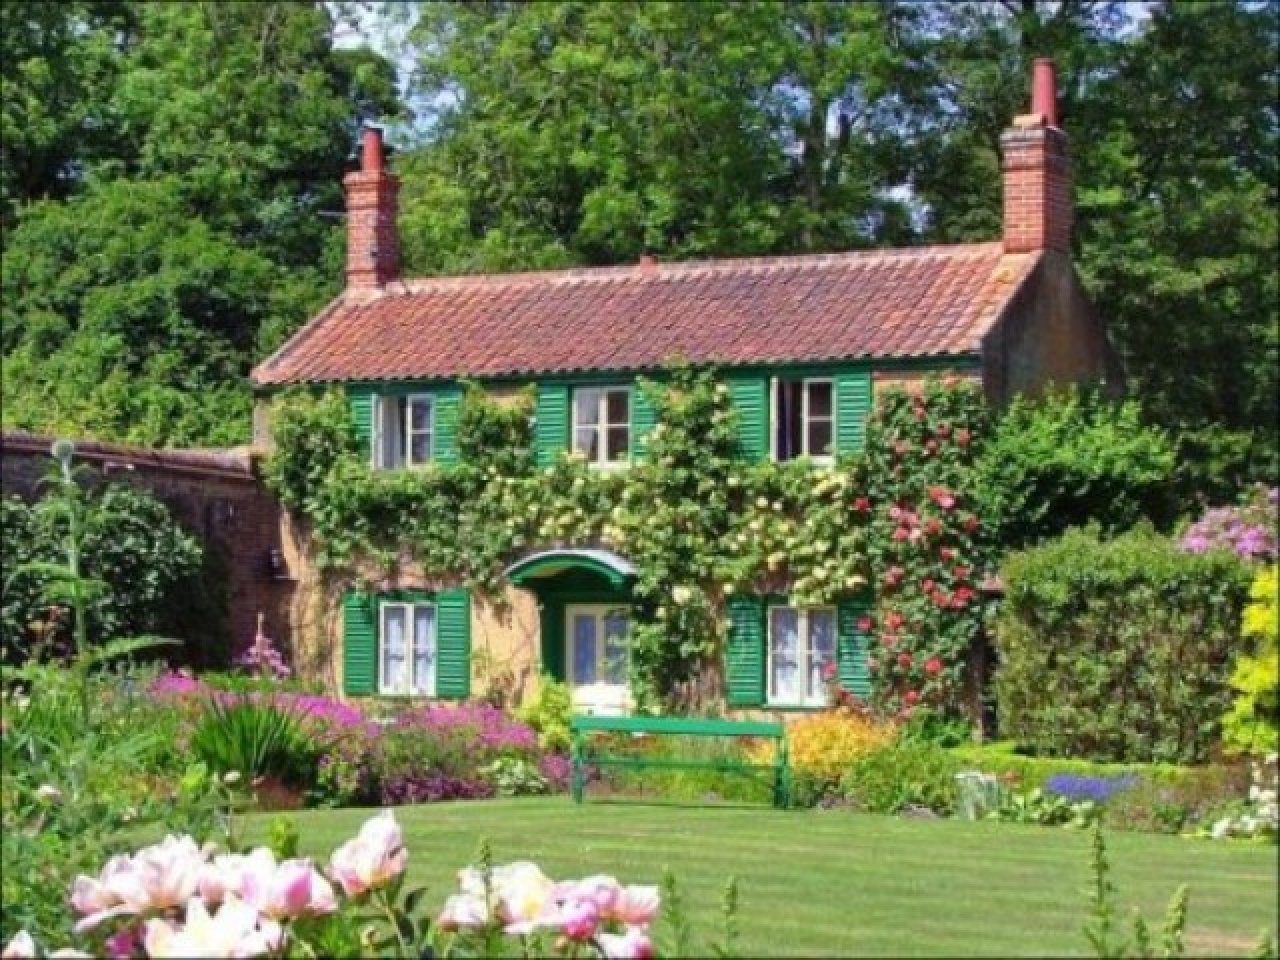 Beautiful английский. Дом Норфолк-Хаус. Дачный домик в английском стиле. Сад в английском стиле в коттедже. Английский сад в деревне.